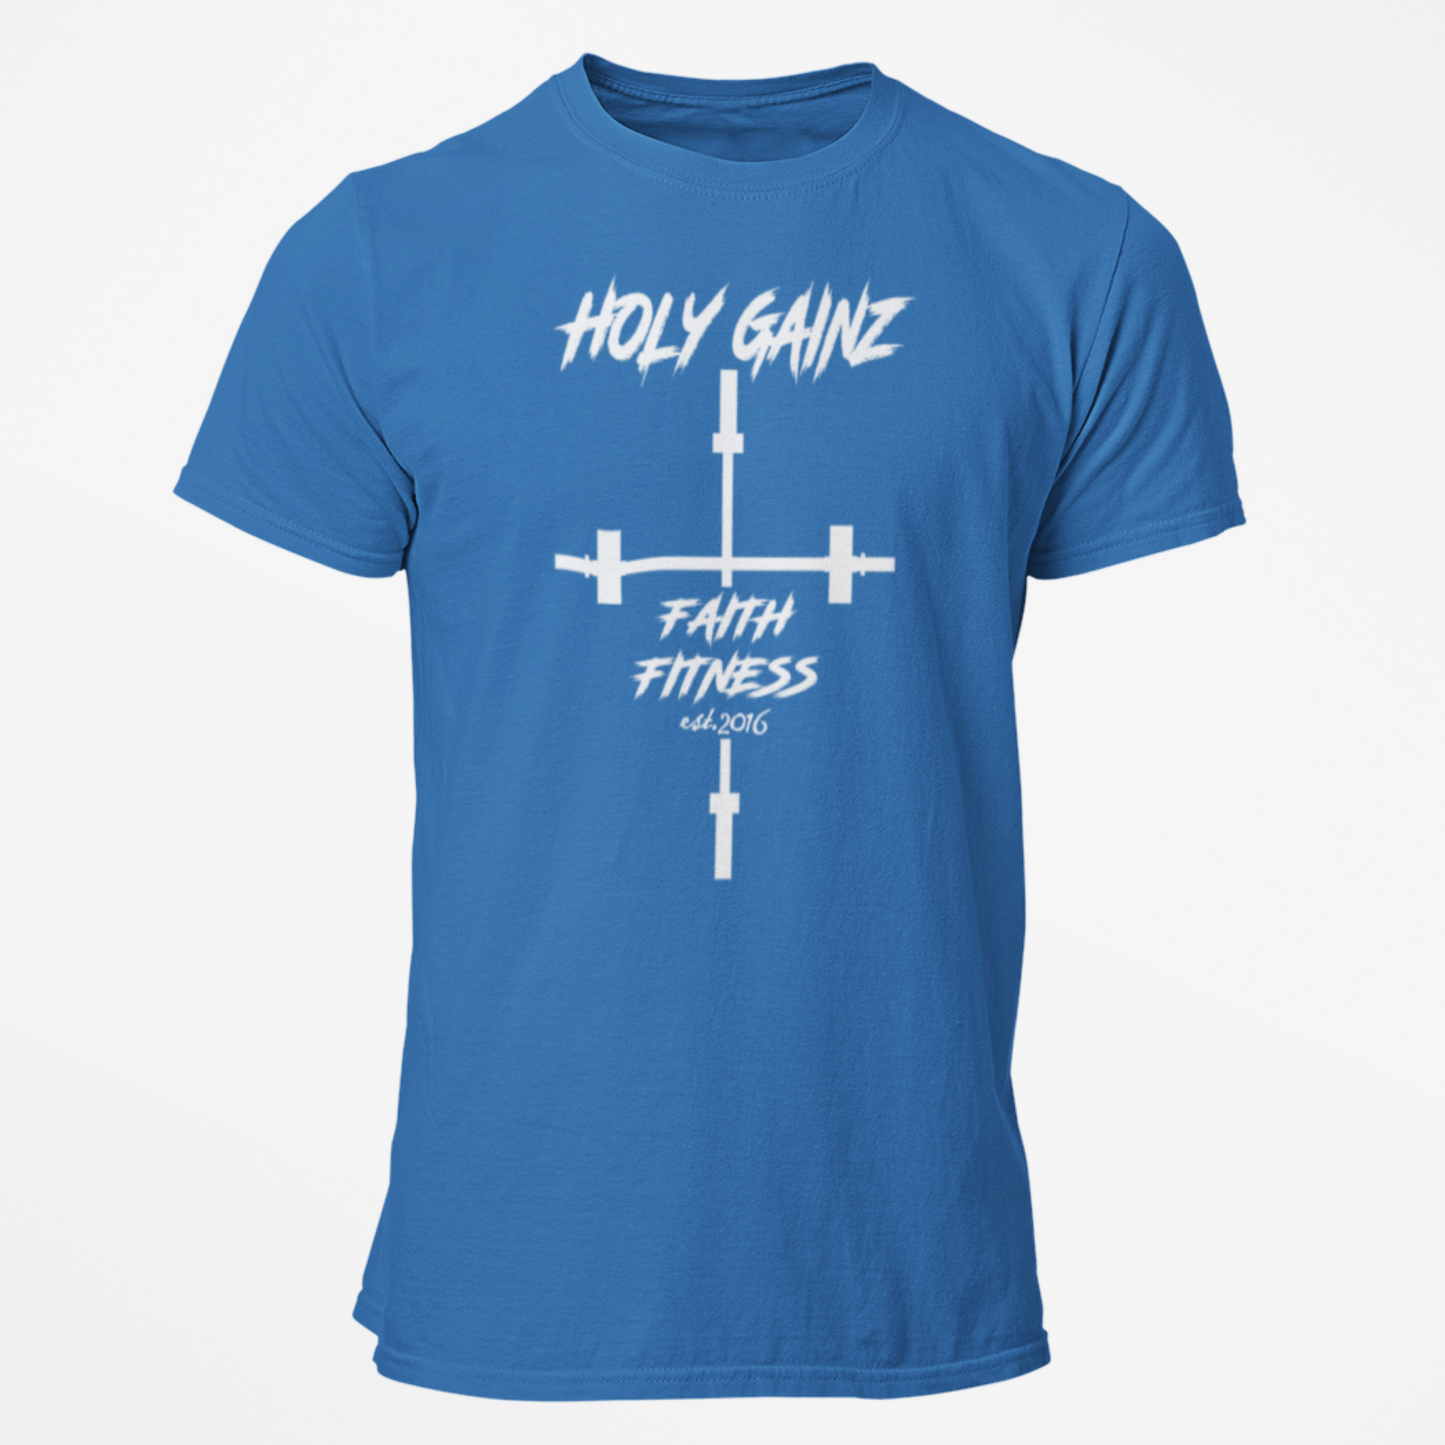 Holy Gainz Apparel Faith Fitness Unisex Tee